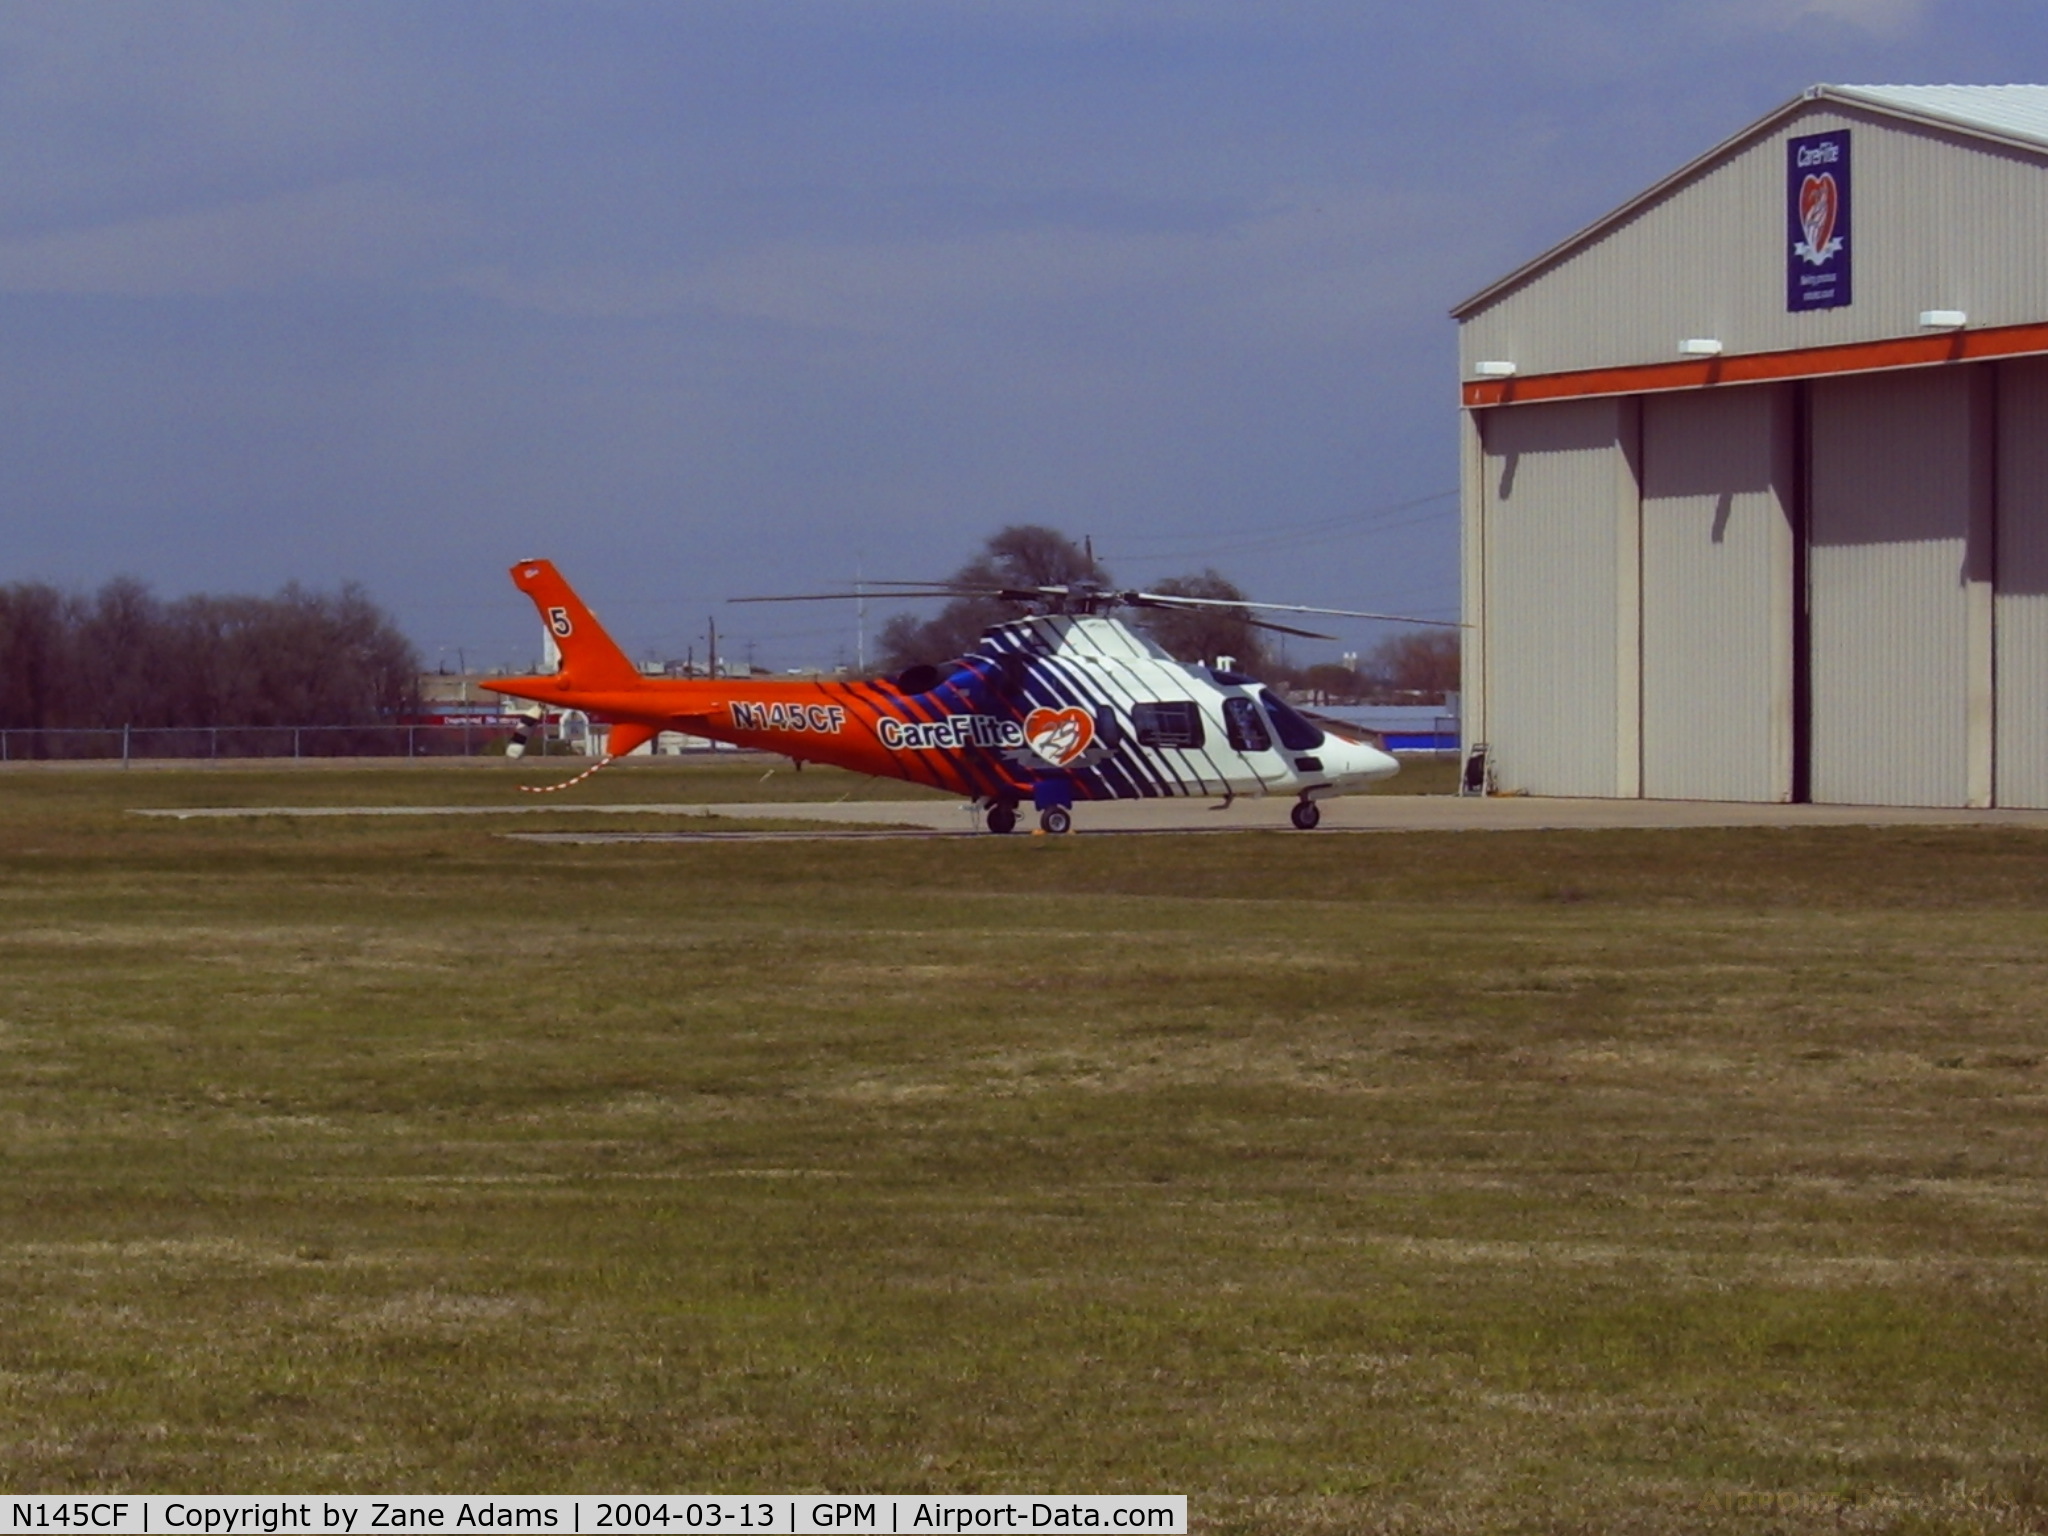 N145CF, Agusta A-109E C/N 11149, at Careflite maintanence hanger